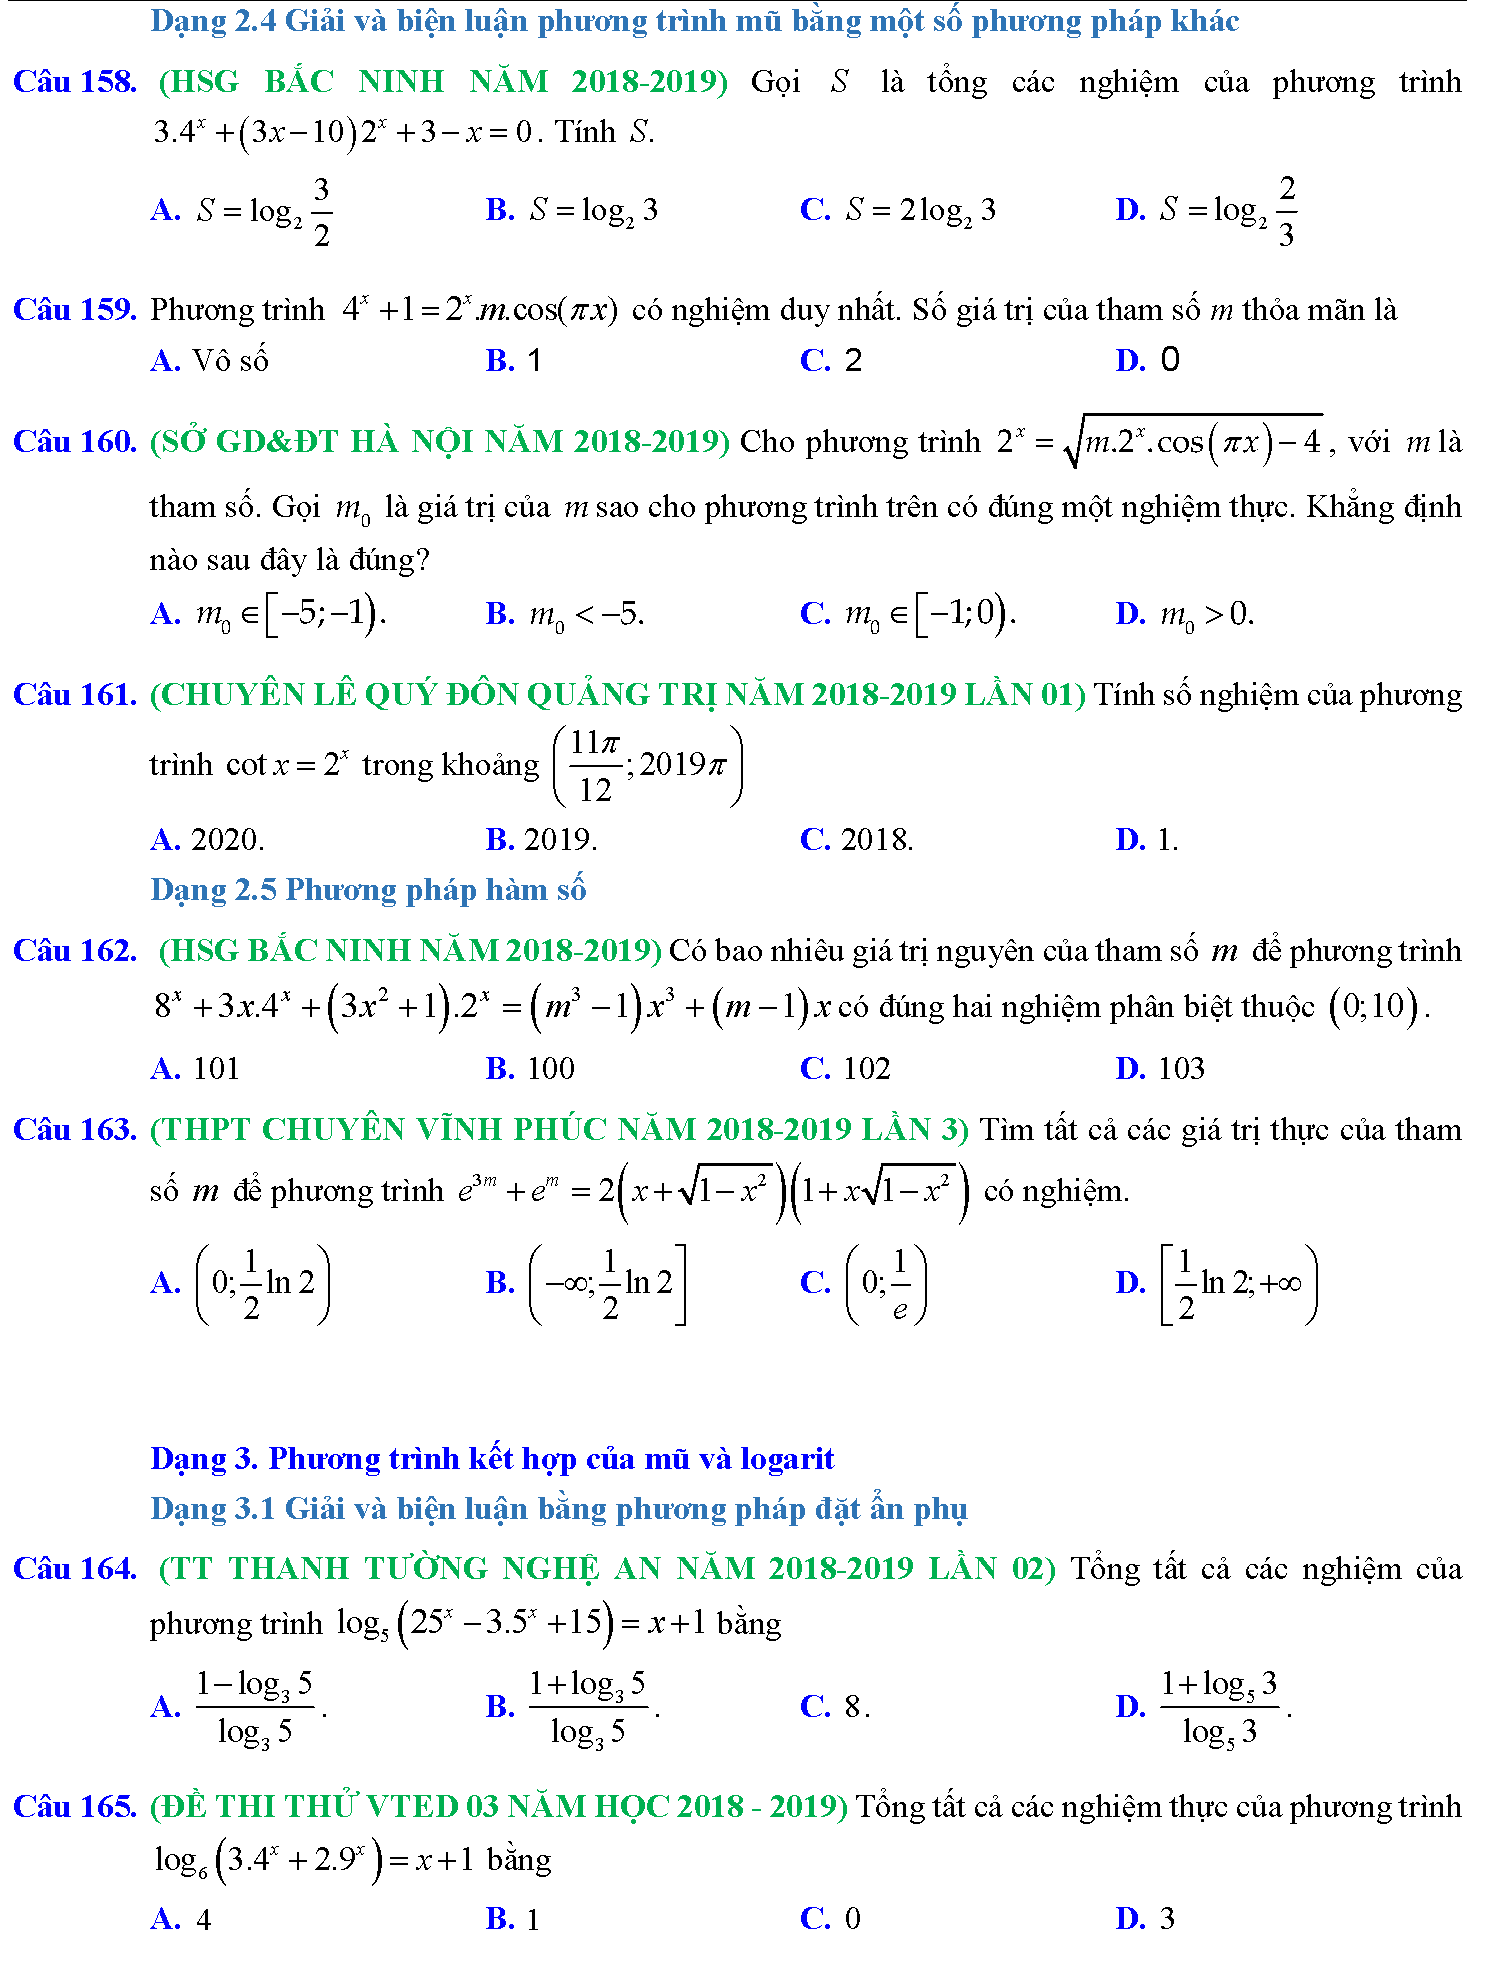 Phương trình mũ, phương trình logarit trong kỳ thi THPTQG 19